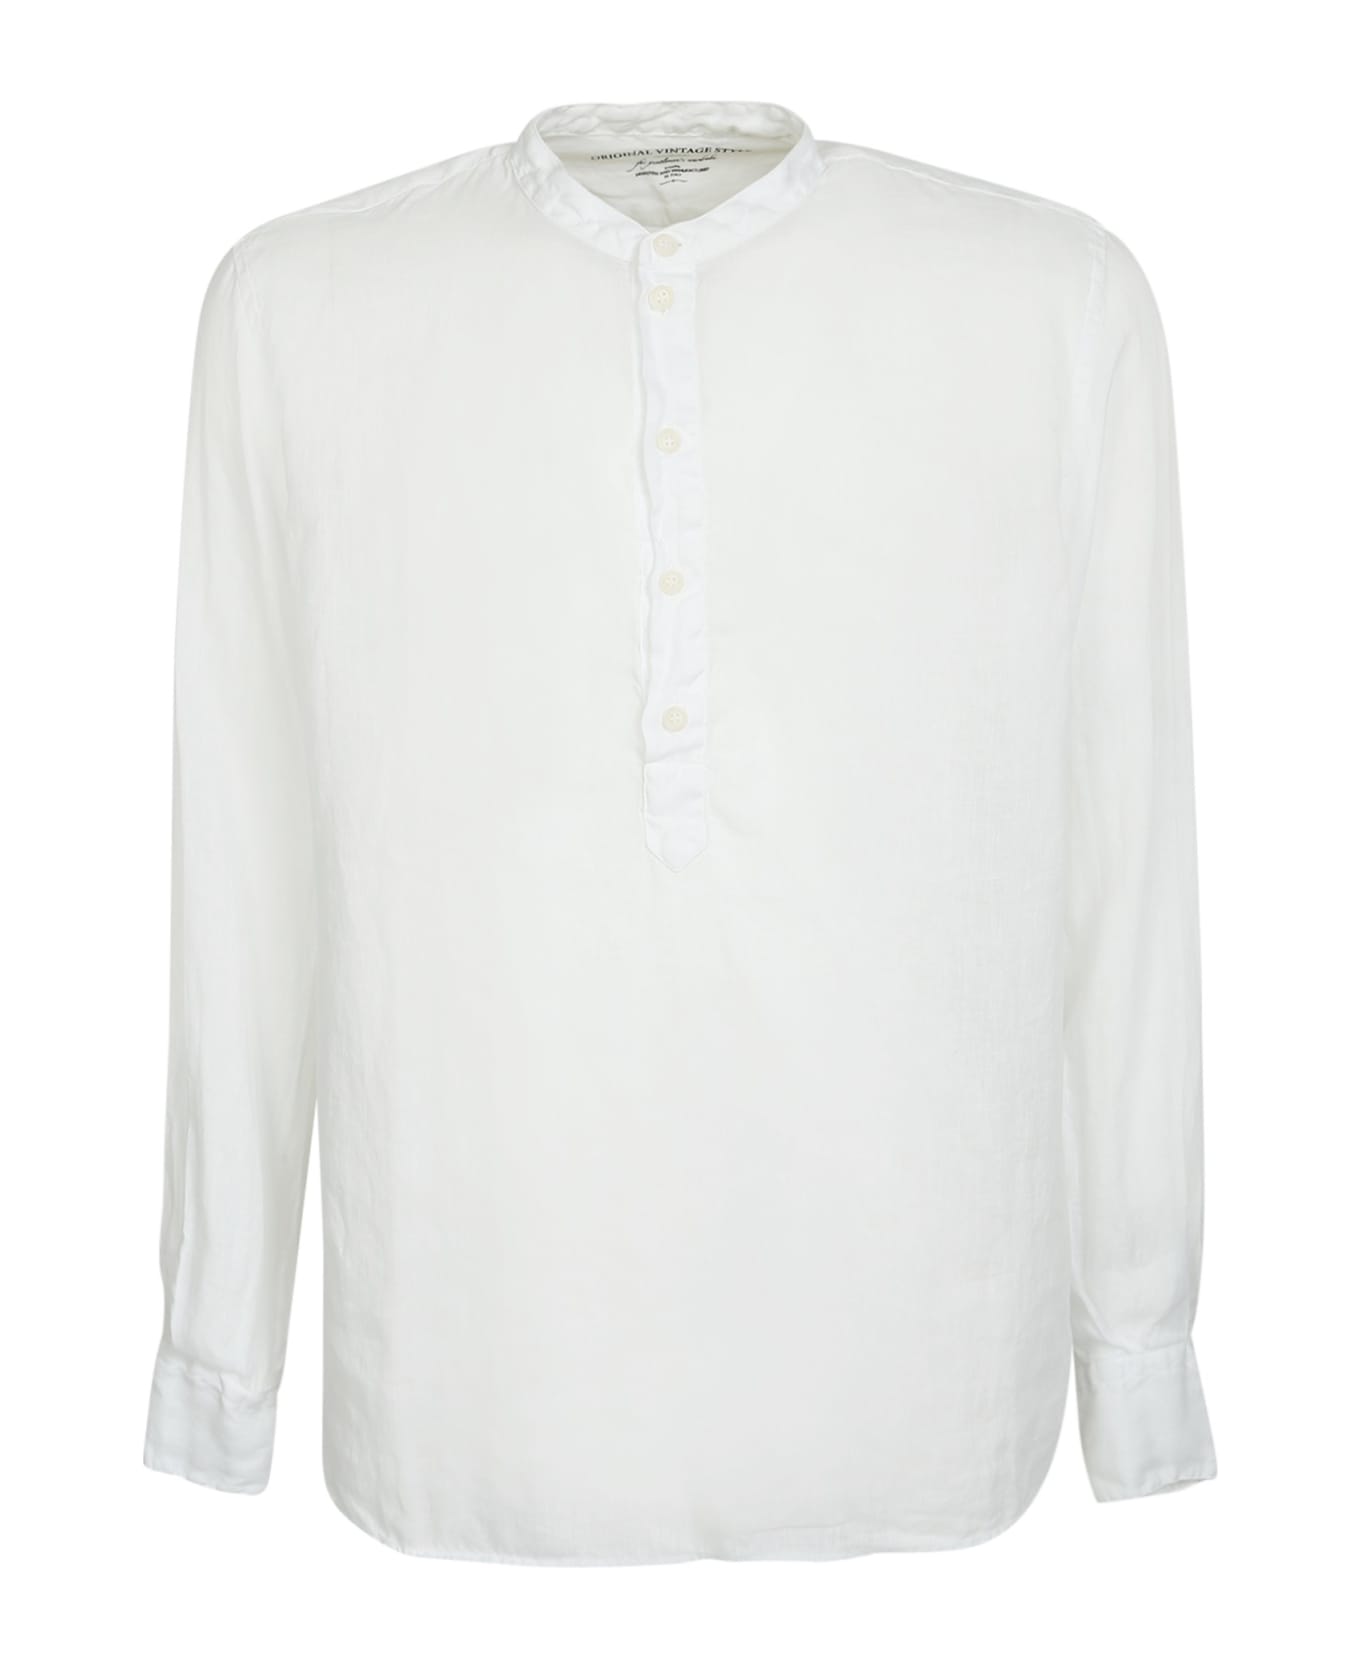 Original Vintage Style Linen 9-5 Polo Shirt - White